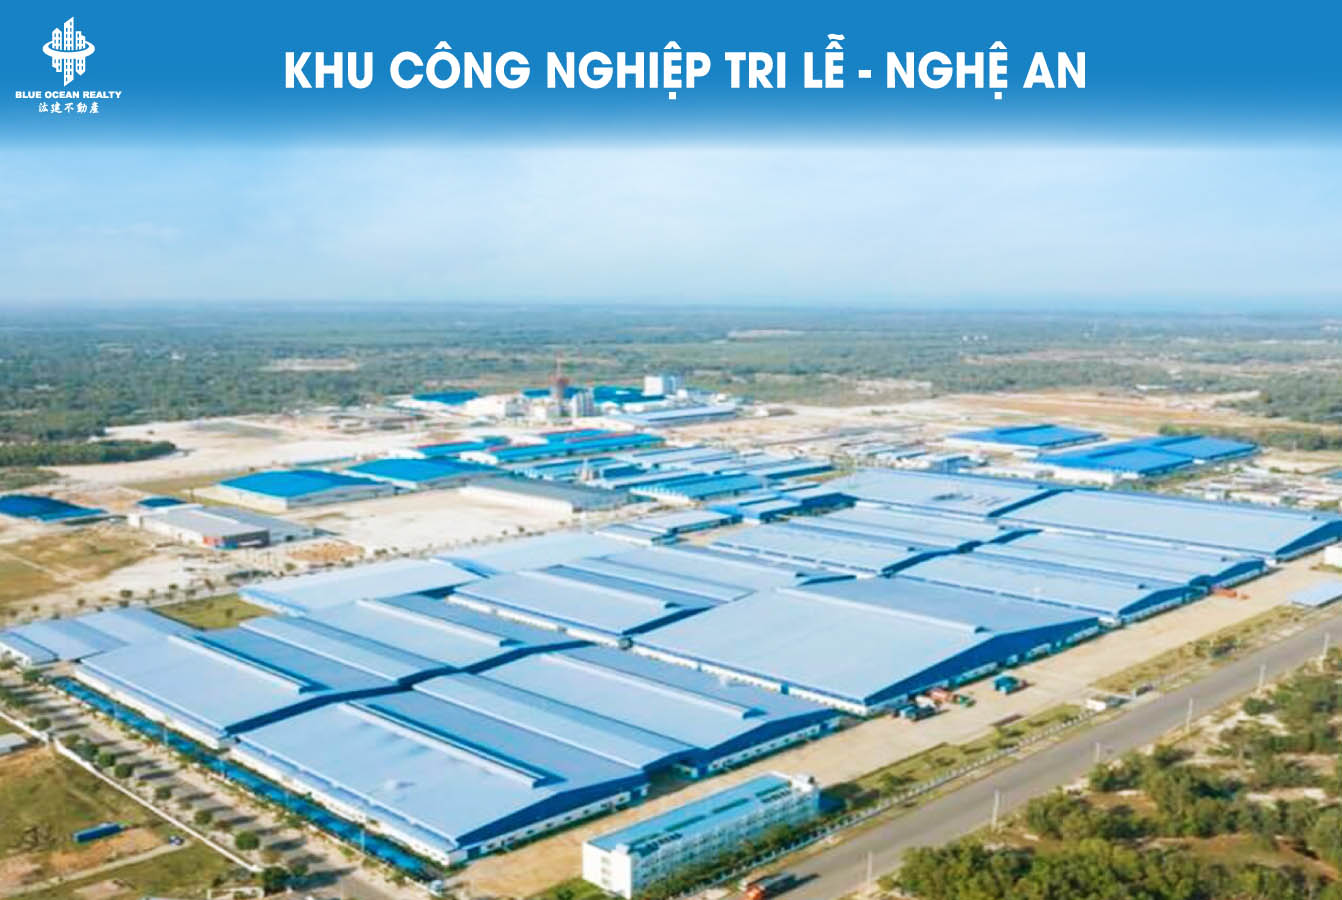 Khu công nghiệp (KCN) Tri Lễ tỉnh Nghệ An